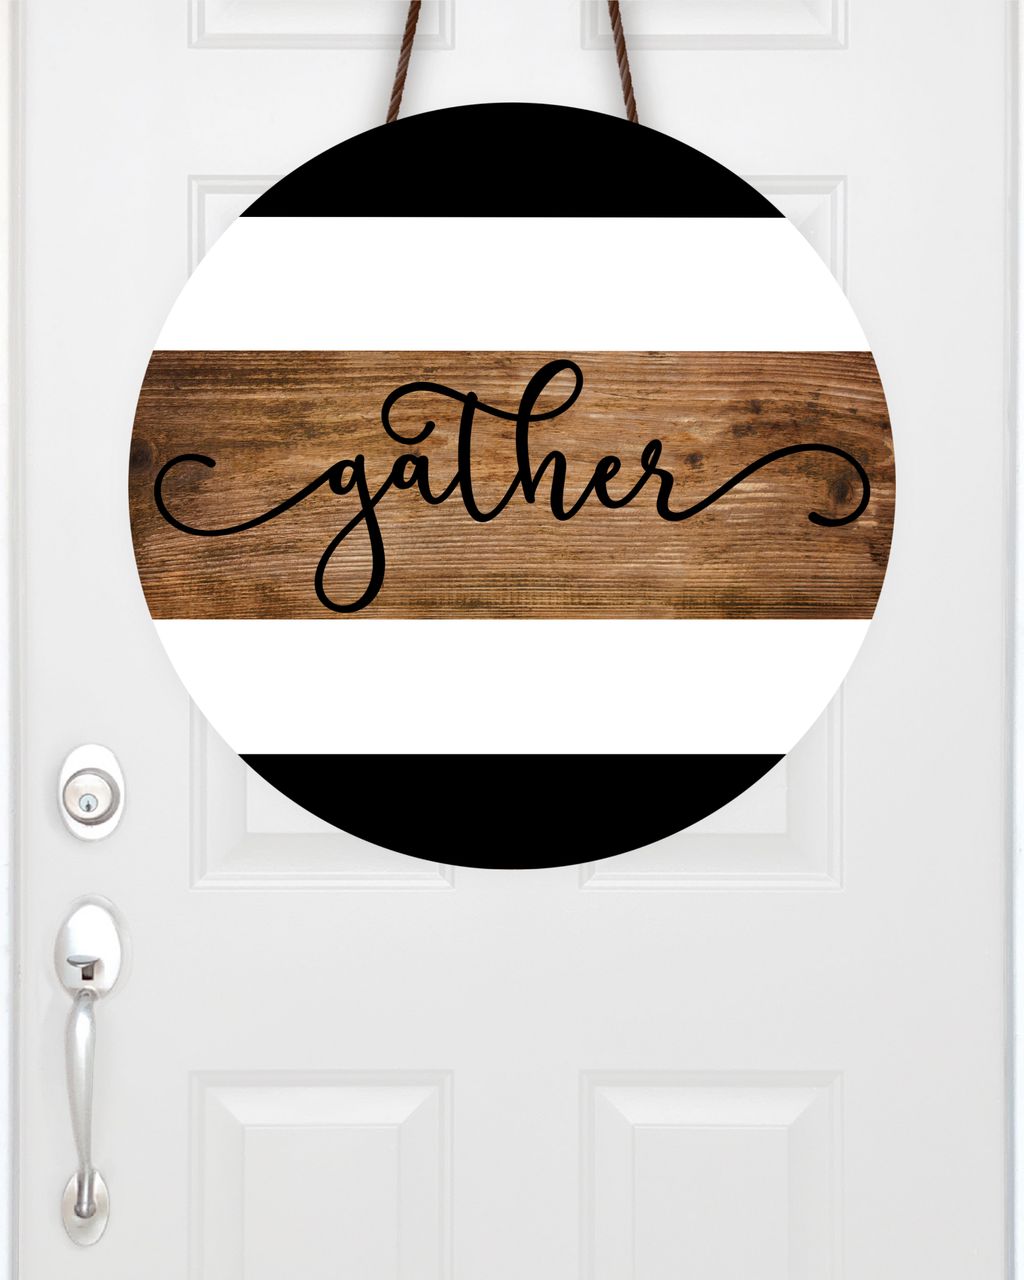 Gather Door Hanger/Sign